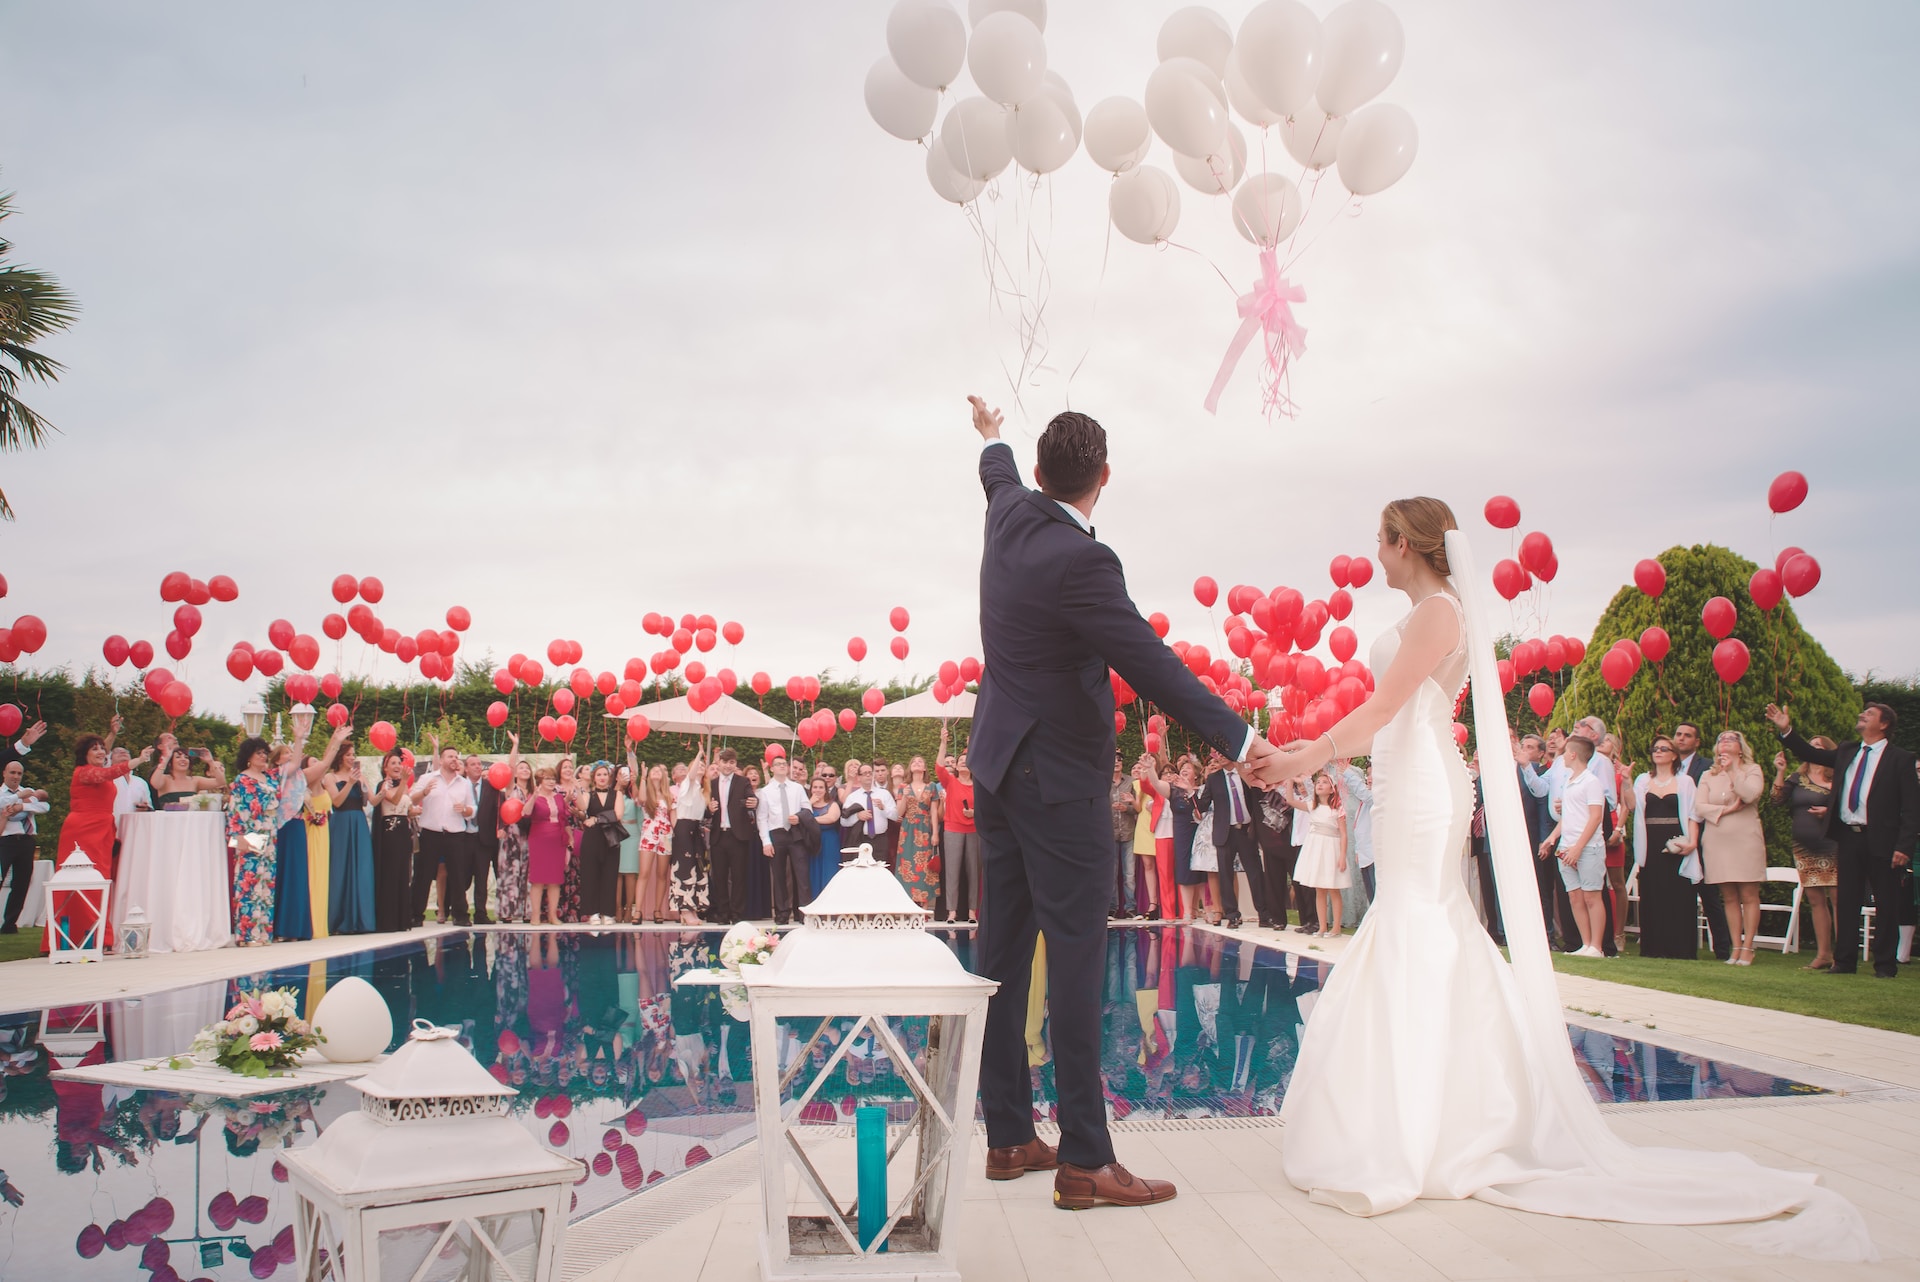 El ambiente de los invitados y el color del lugar son importantes en un sueño, porque le ayudarán a interpretar el sueño de la boda. (Foto Prensa Libre: Álvaro CvG en Unsplash).